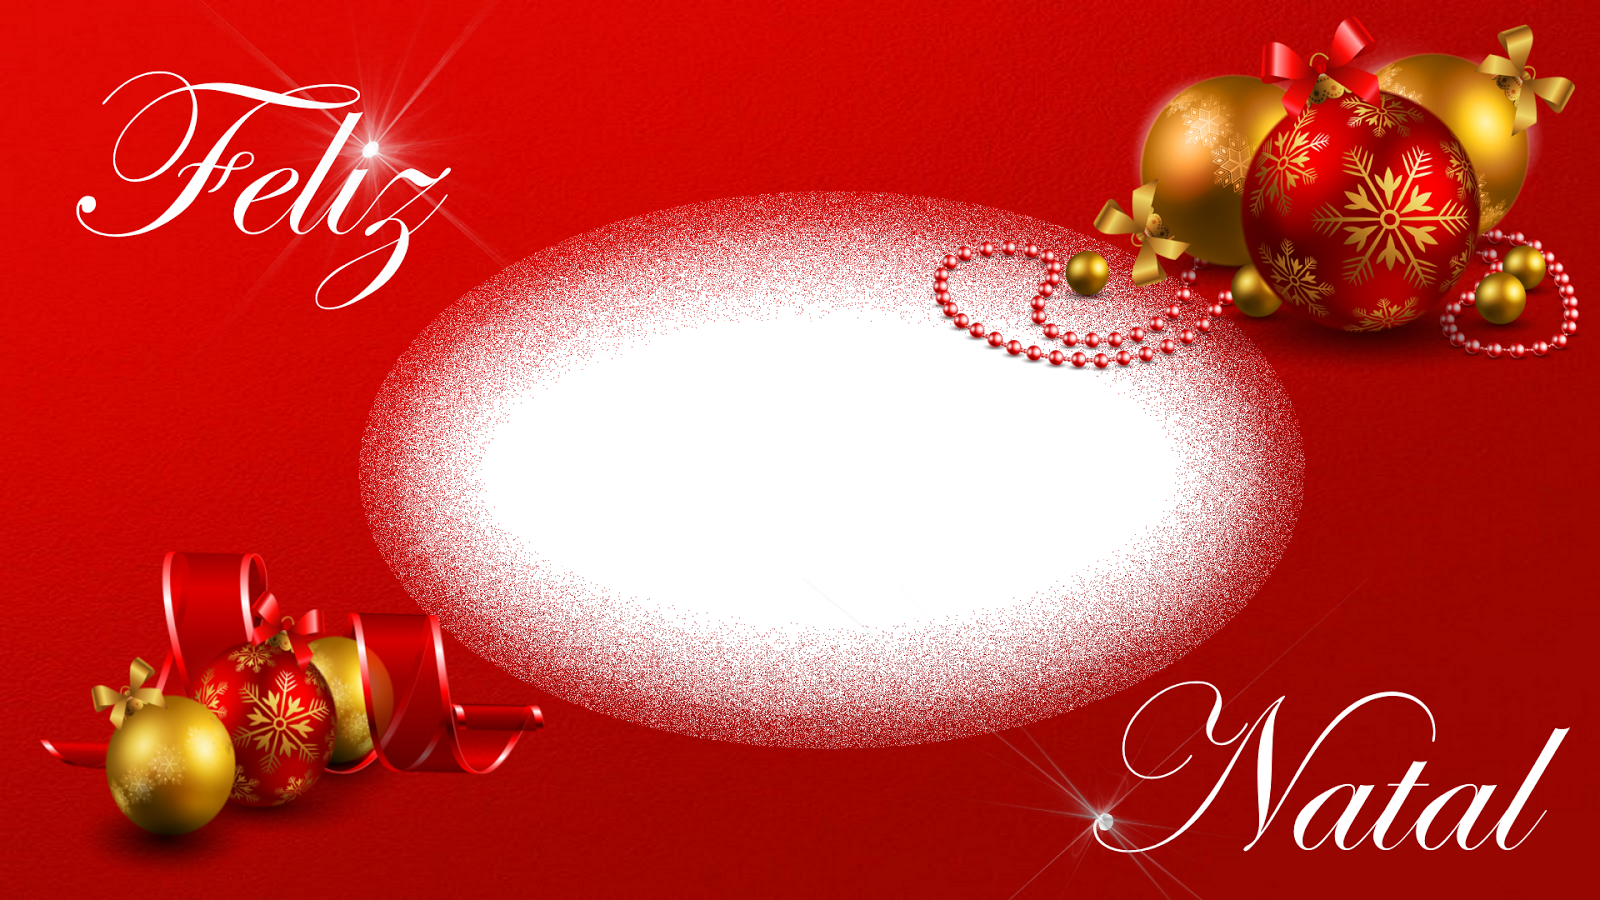 Moldura Natal 2017 Com Decoração Feliz Natal E Estrelas (1600x900), Png Download